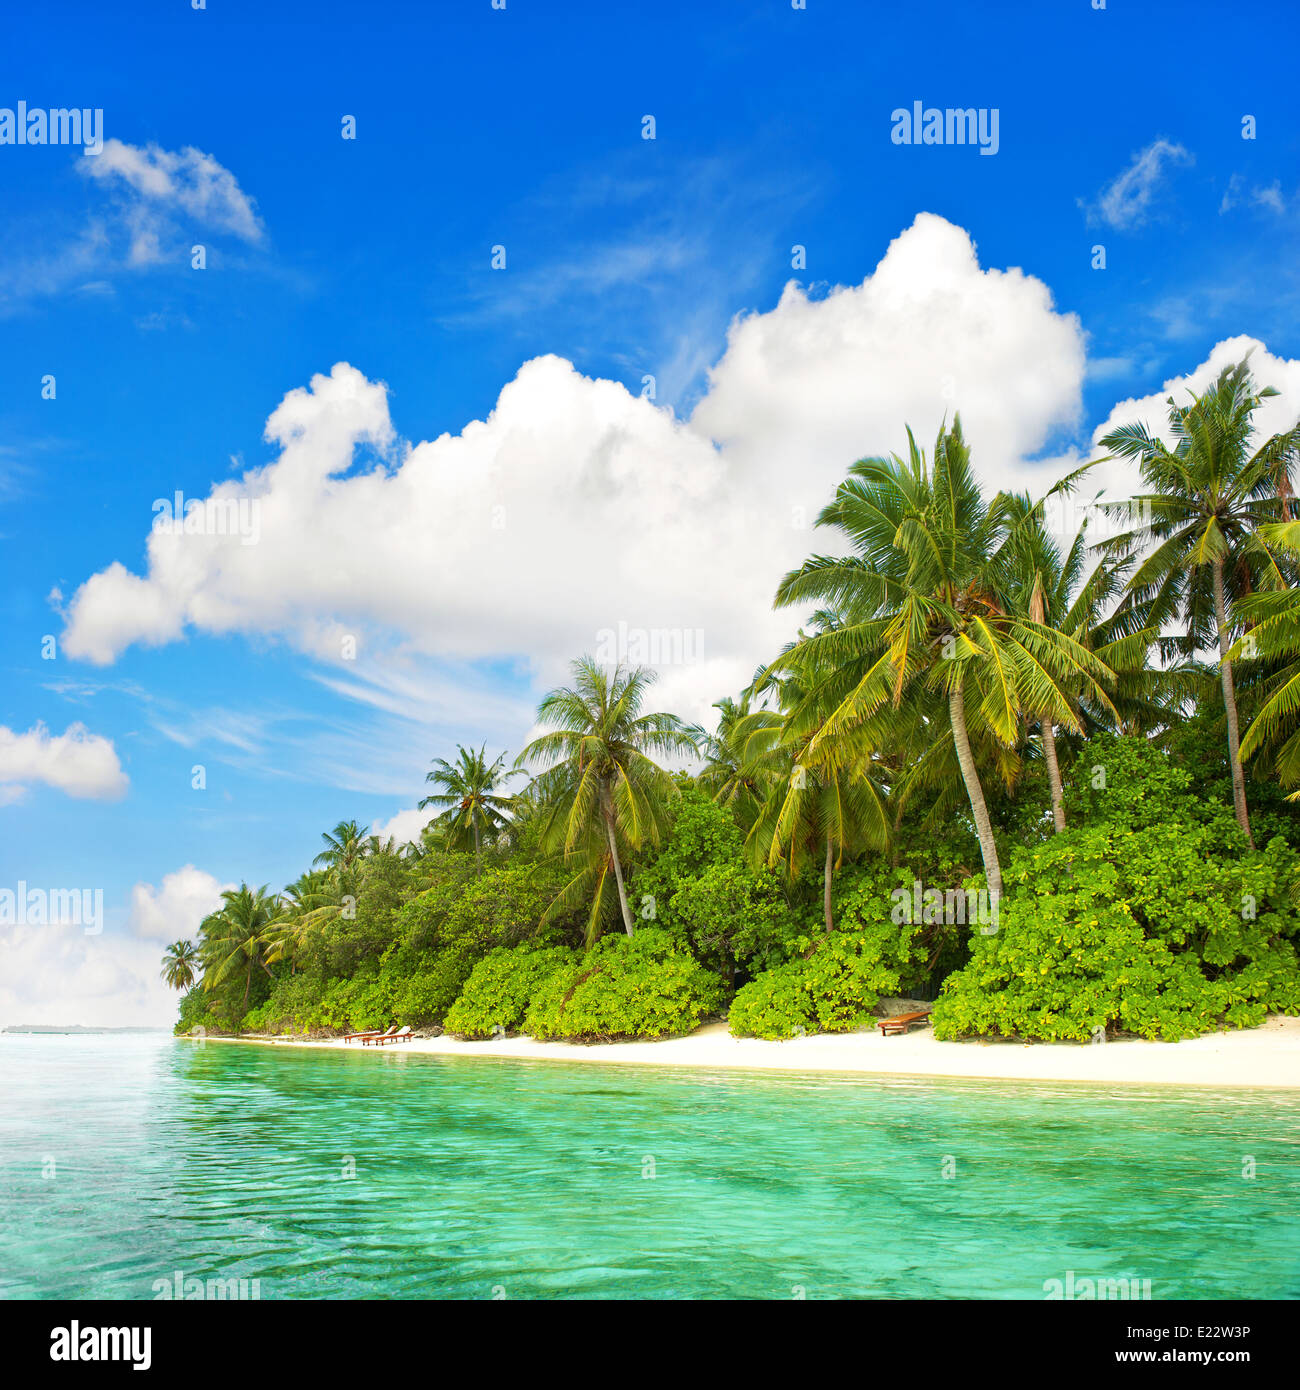 Plage de l'île tropicale. Paysage avec palmiers vert et bleu ciel nuageux Banque D'Images